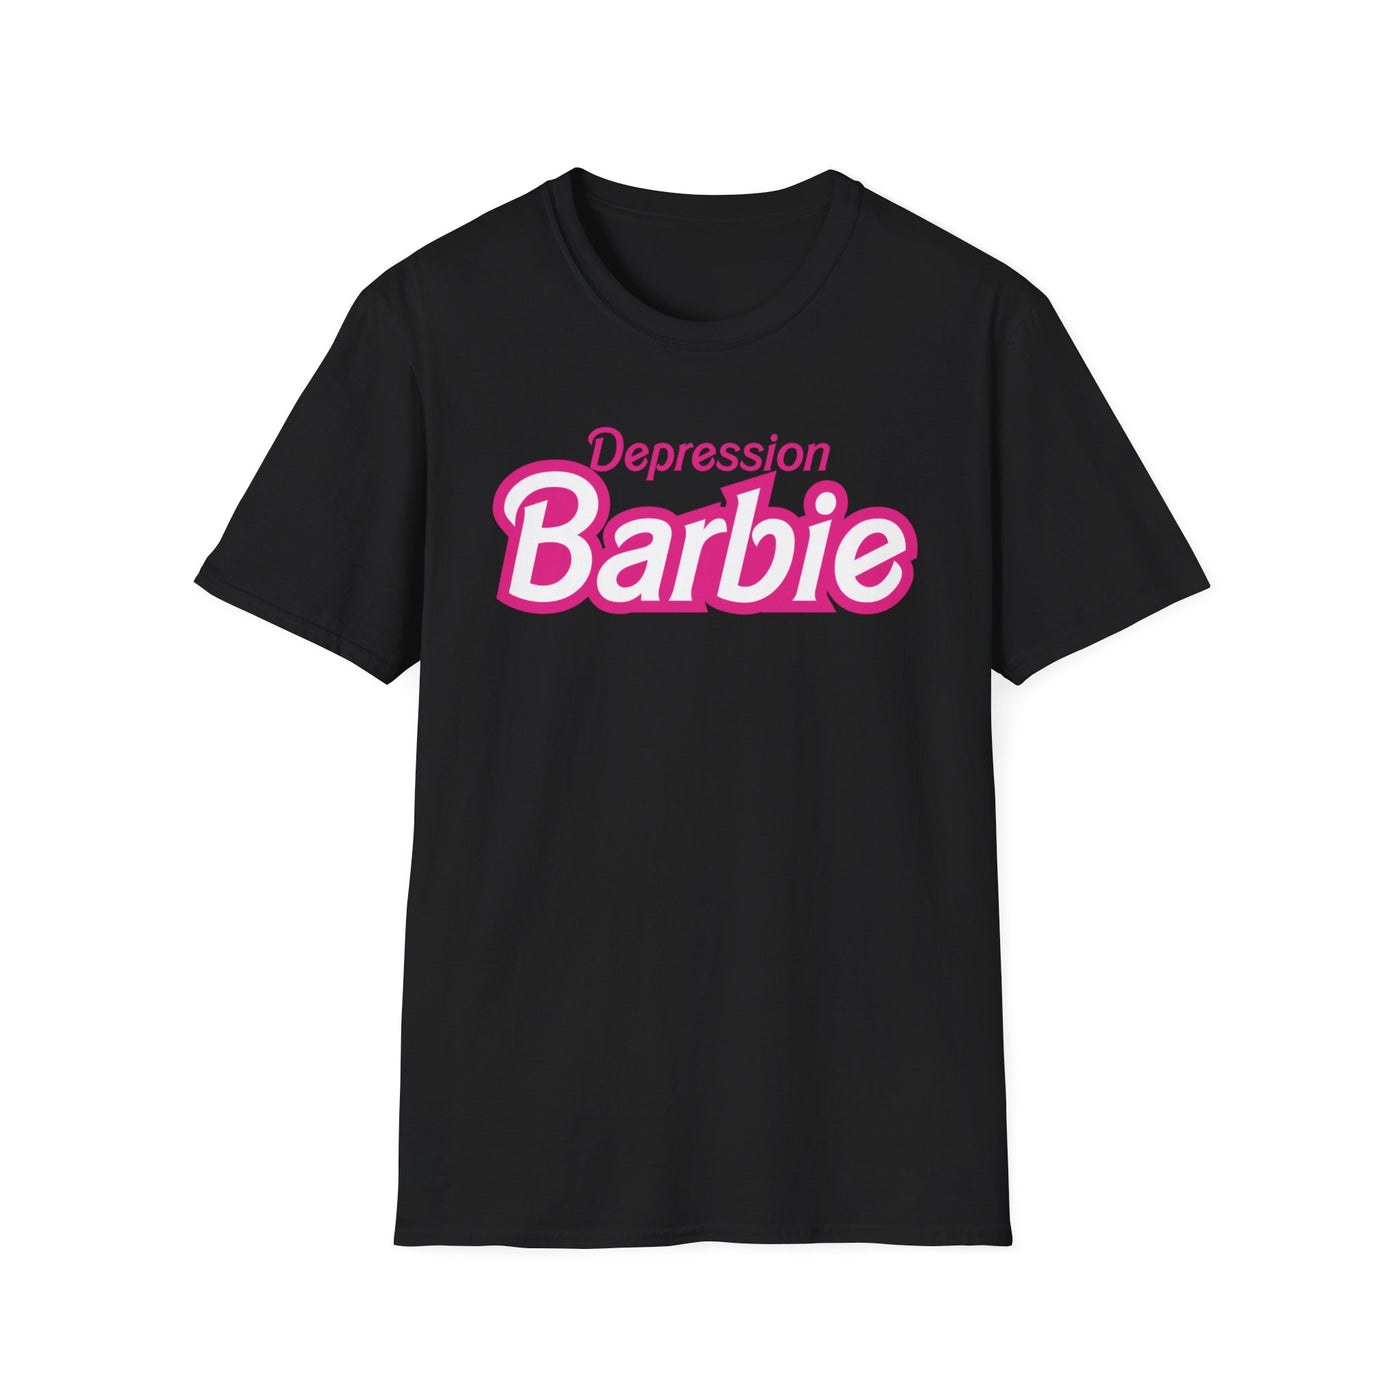 Depression Barbie